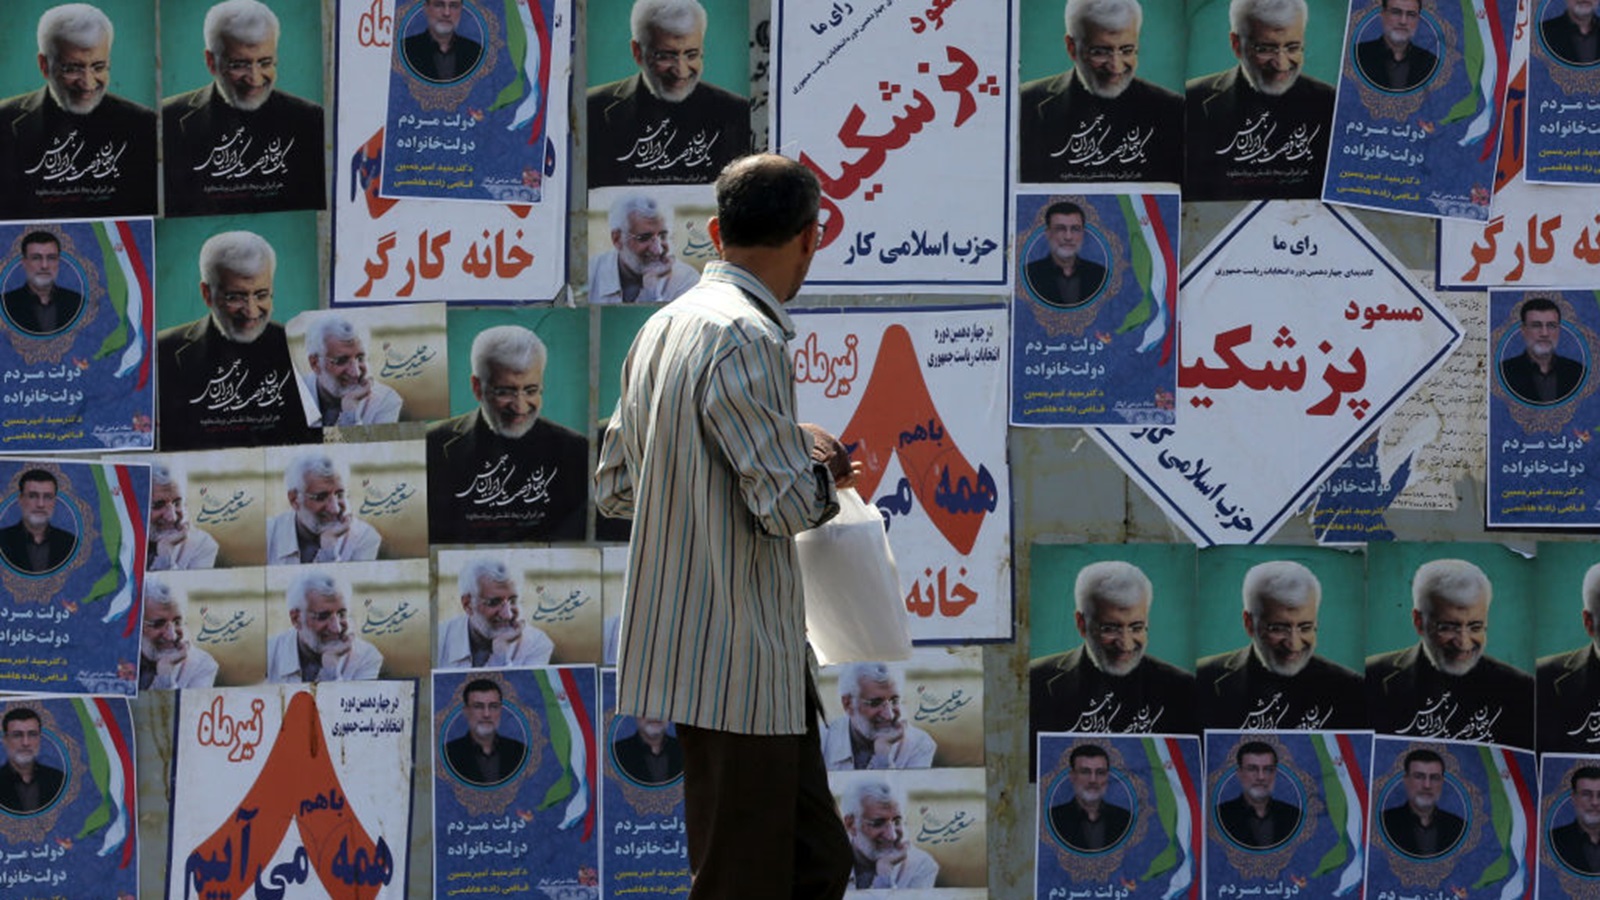 نتائج الانتخابات الايرانية:تراجع شعبية الحزبين..وميل نحو التغيير